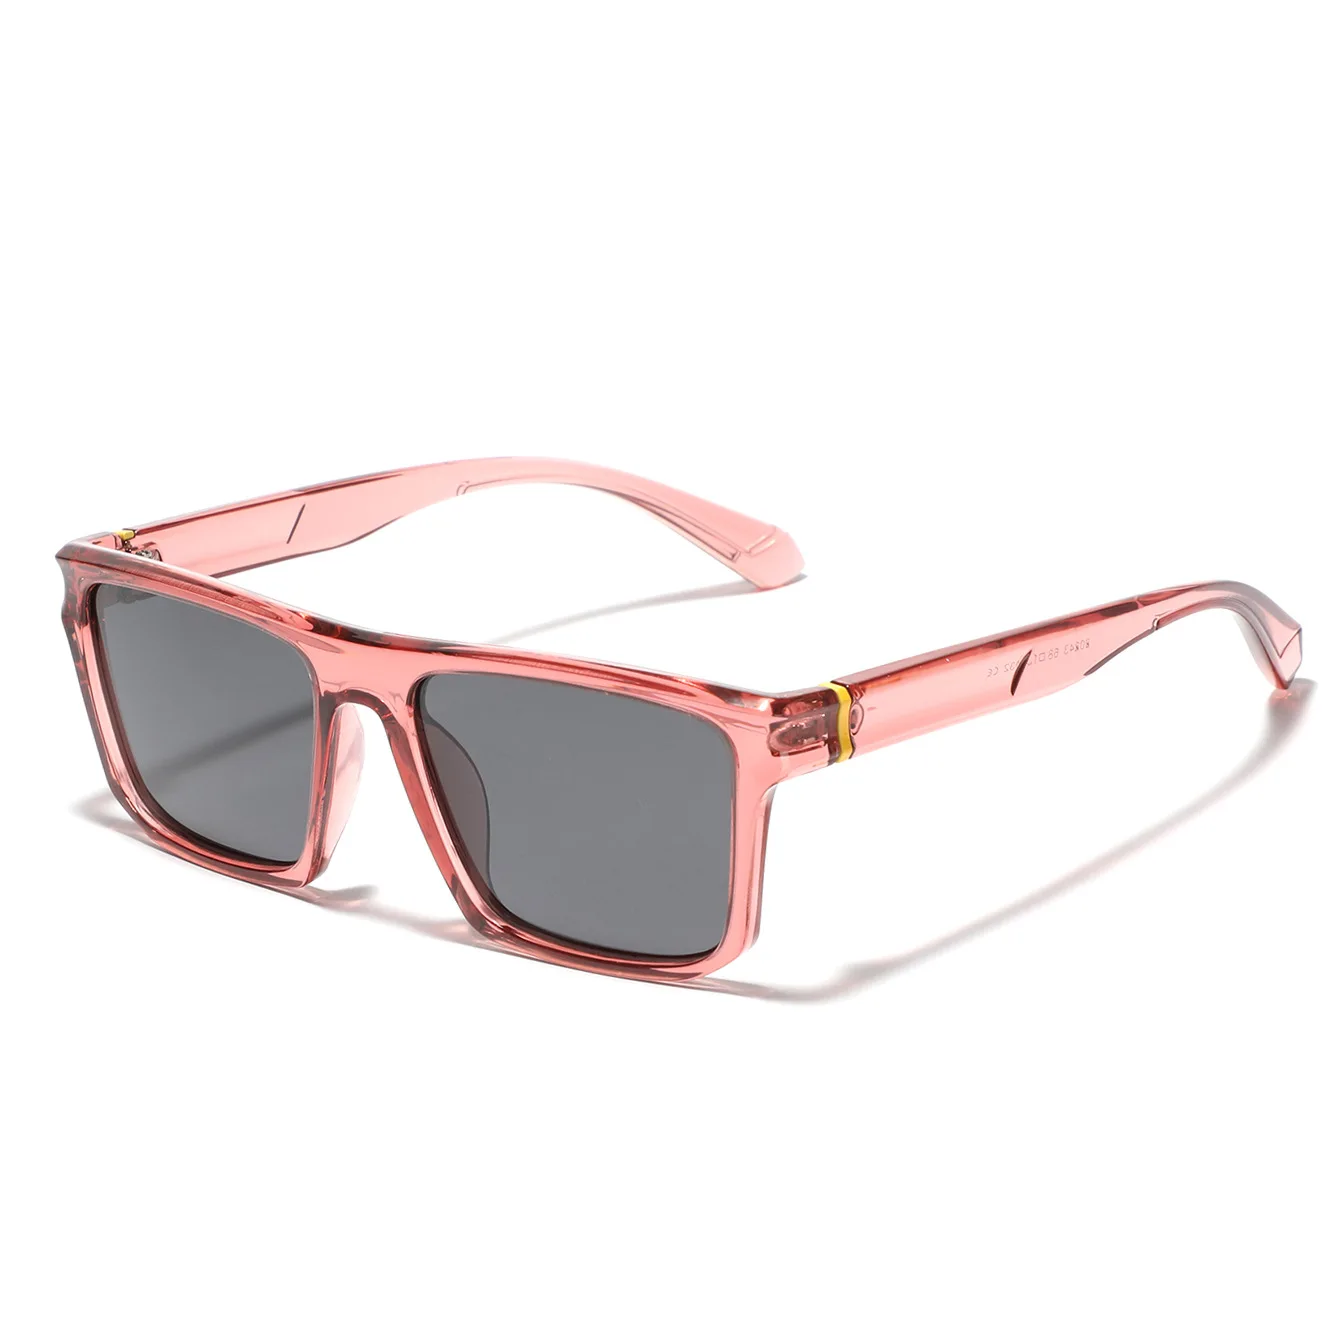 

Солнцезащитные очки TR90 для мужчин и женщин, винтажные аксессуары в стиле ретро, в оправе из материала TAC, для вождения, походов